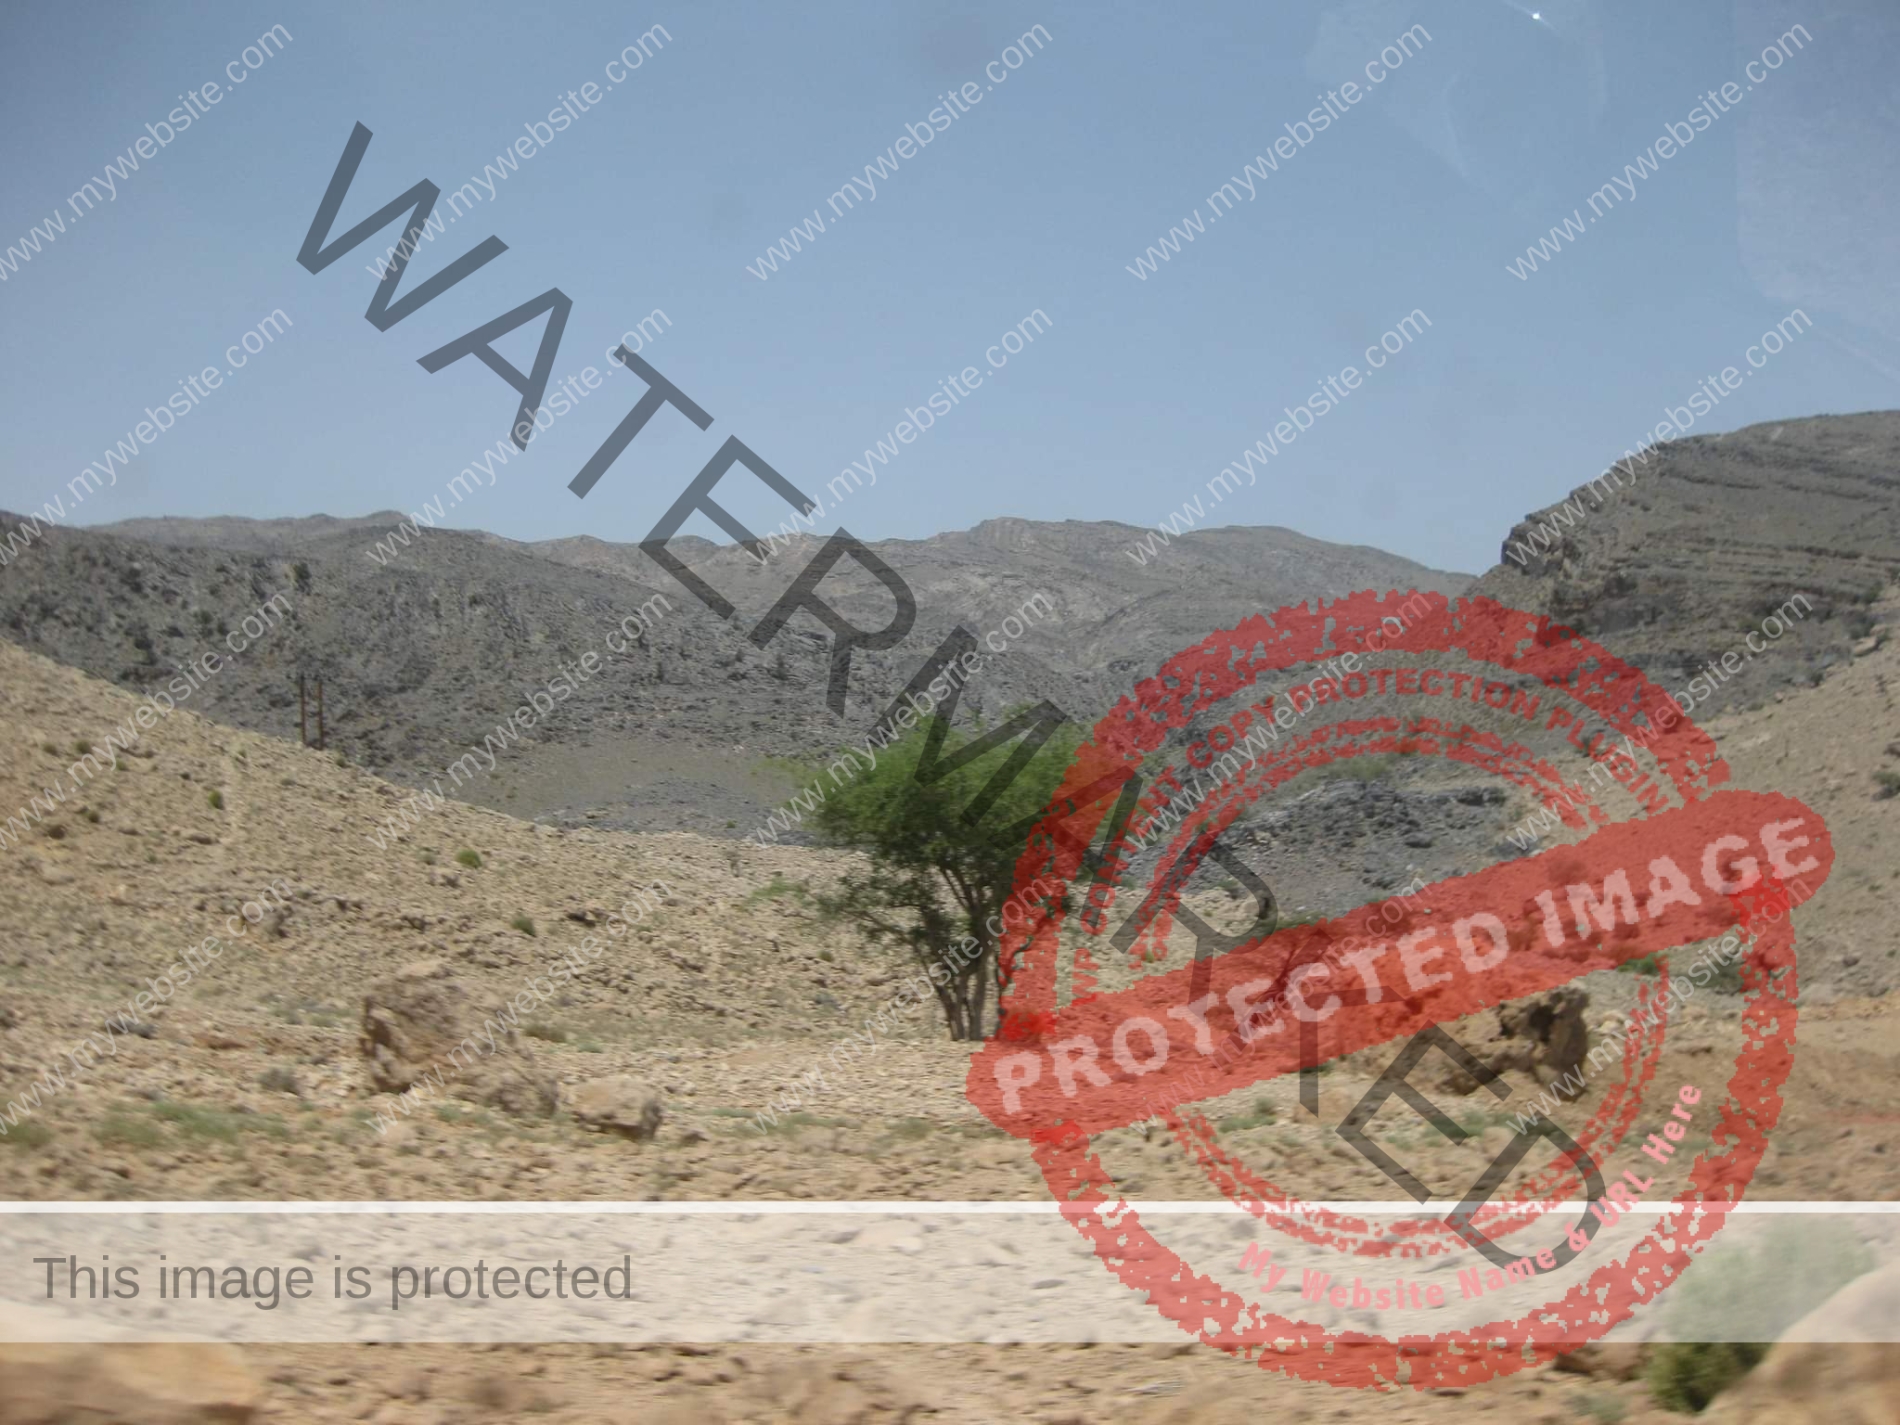 بالصور .. العارف بالله طلعت أعلى "الجبل الأبيض" بسلطنة عمان